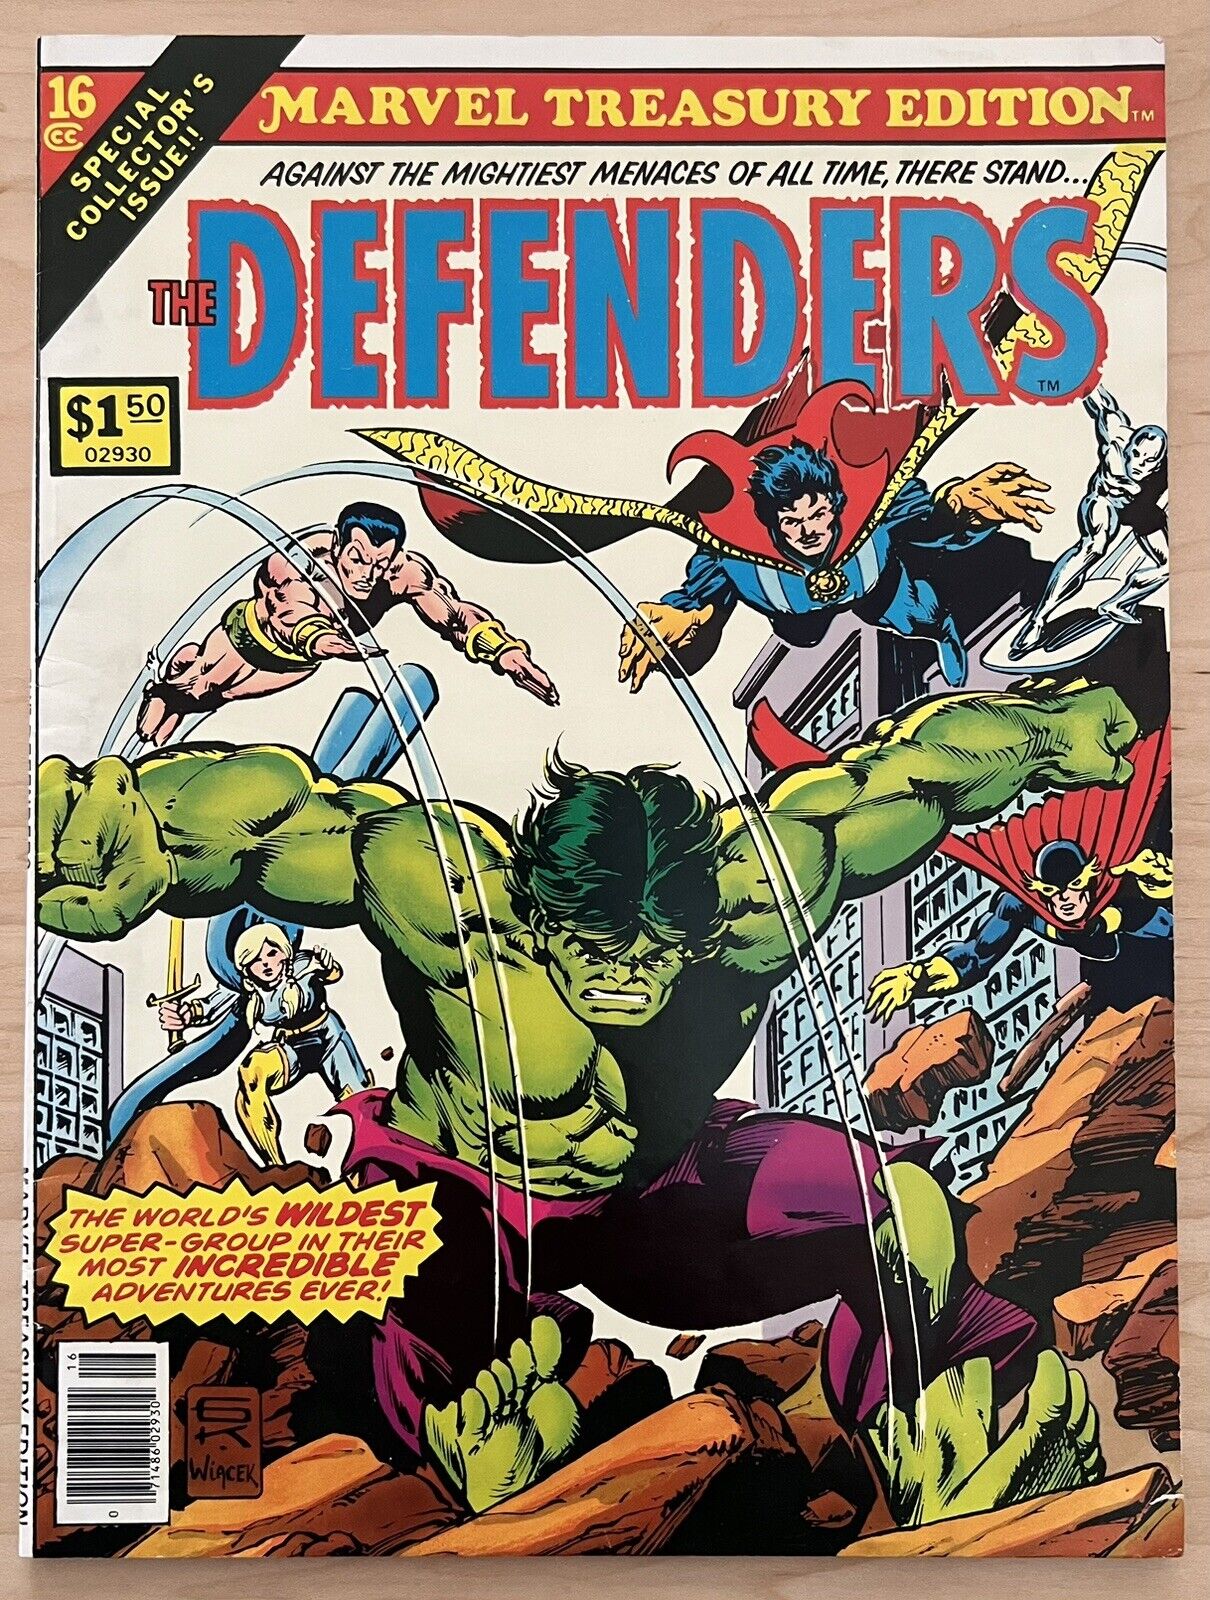 Marvel Treasury Edition #16 - The Defenders (1978) - Marvel Comics - Hulk